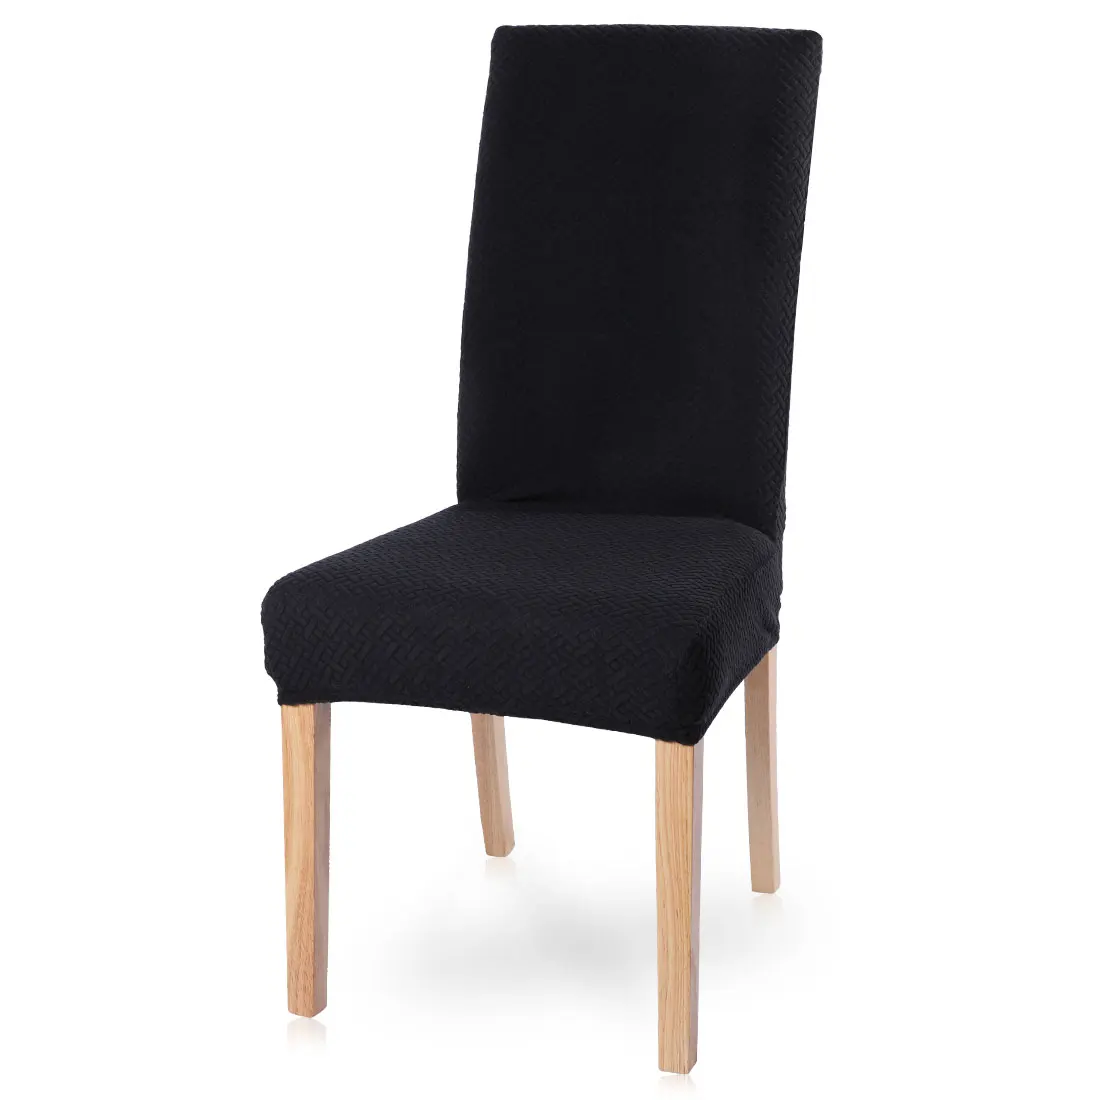 Однотонные чехлы на стулья из флиса, плотные эластичные чехлы на стулья для офиса, столовой, отеля, банкета - Color: Black 01 40-50cm